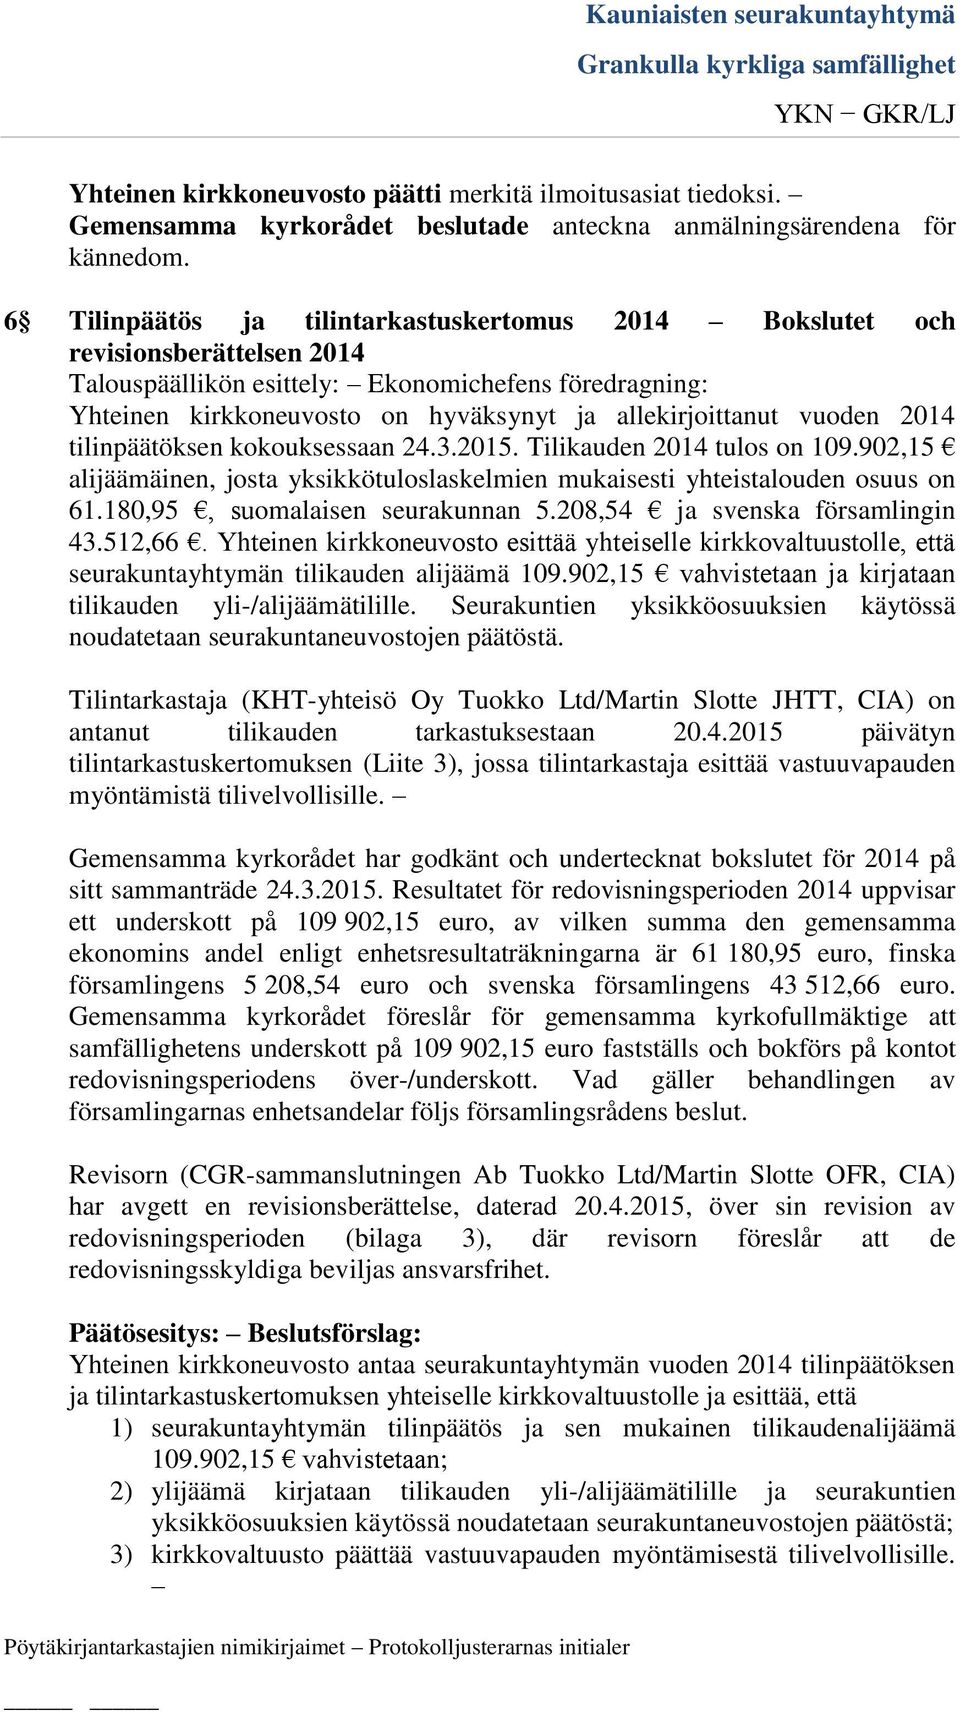 Tilikauden 2014 tulos on 109.902,15 alijäämäinen, josta yksikkötuloslaskelmien mukaisesti yhteistalouden osuus on 61.180,95, suomalaisen seurakunnan 5.208,54 ja svenska församlingin 43.512,66.